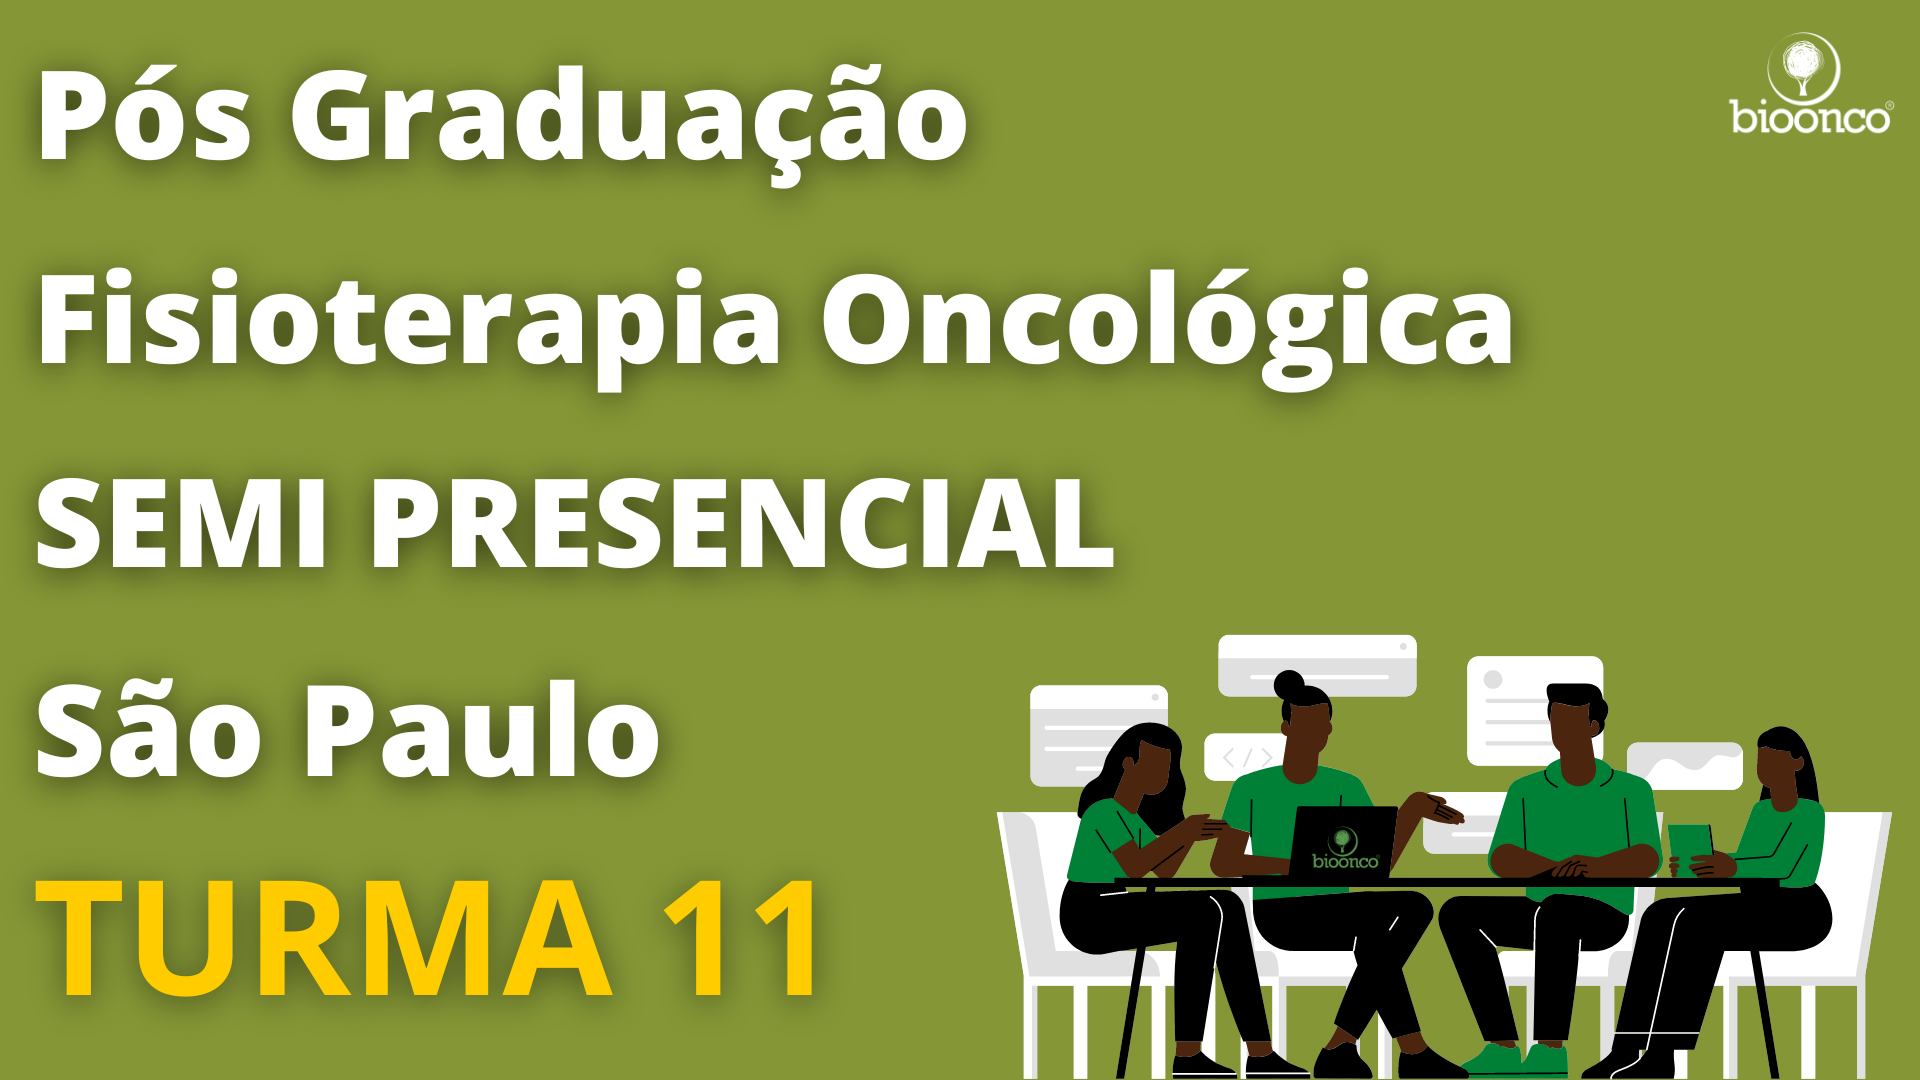 Pós graduação em Fisioterapia Oncologica Semi presencial (São Paulo) TURMA 11